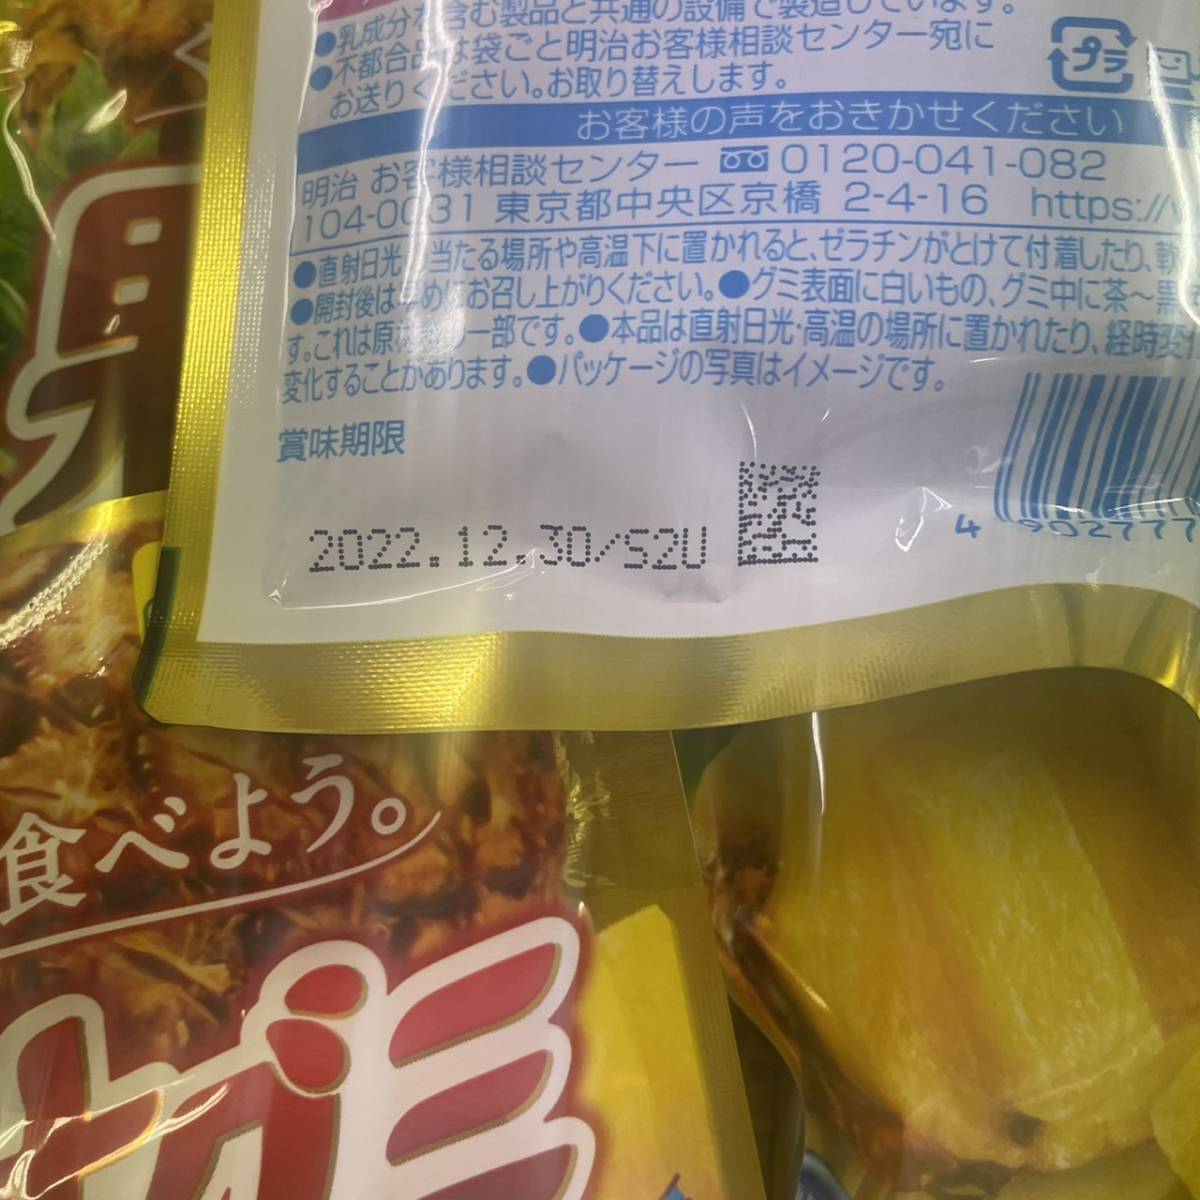 明治 果汁グミゴールデンパイン 47g ×10袋